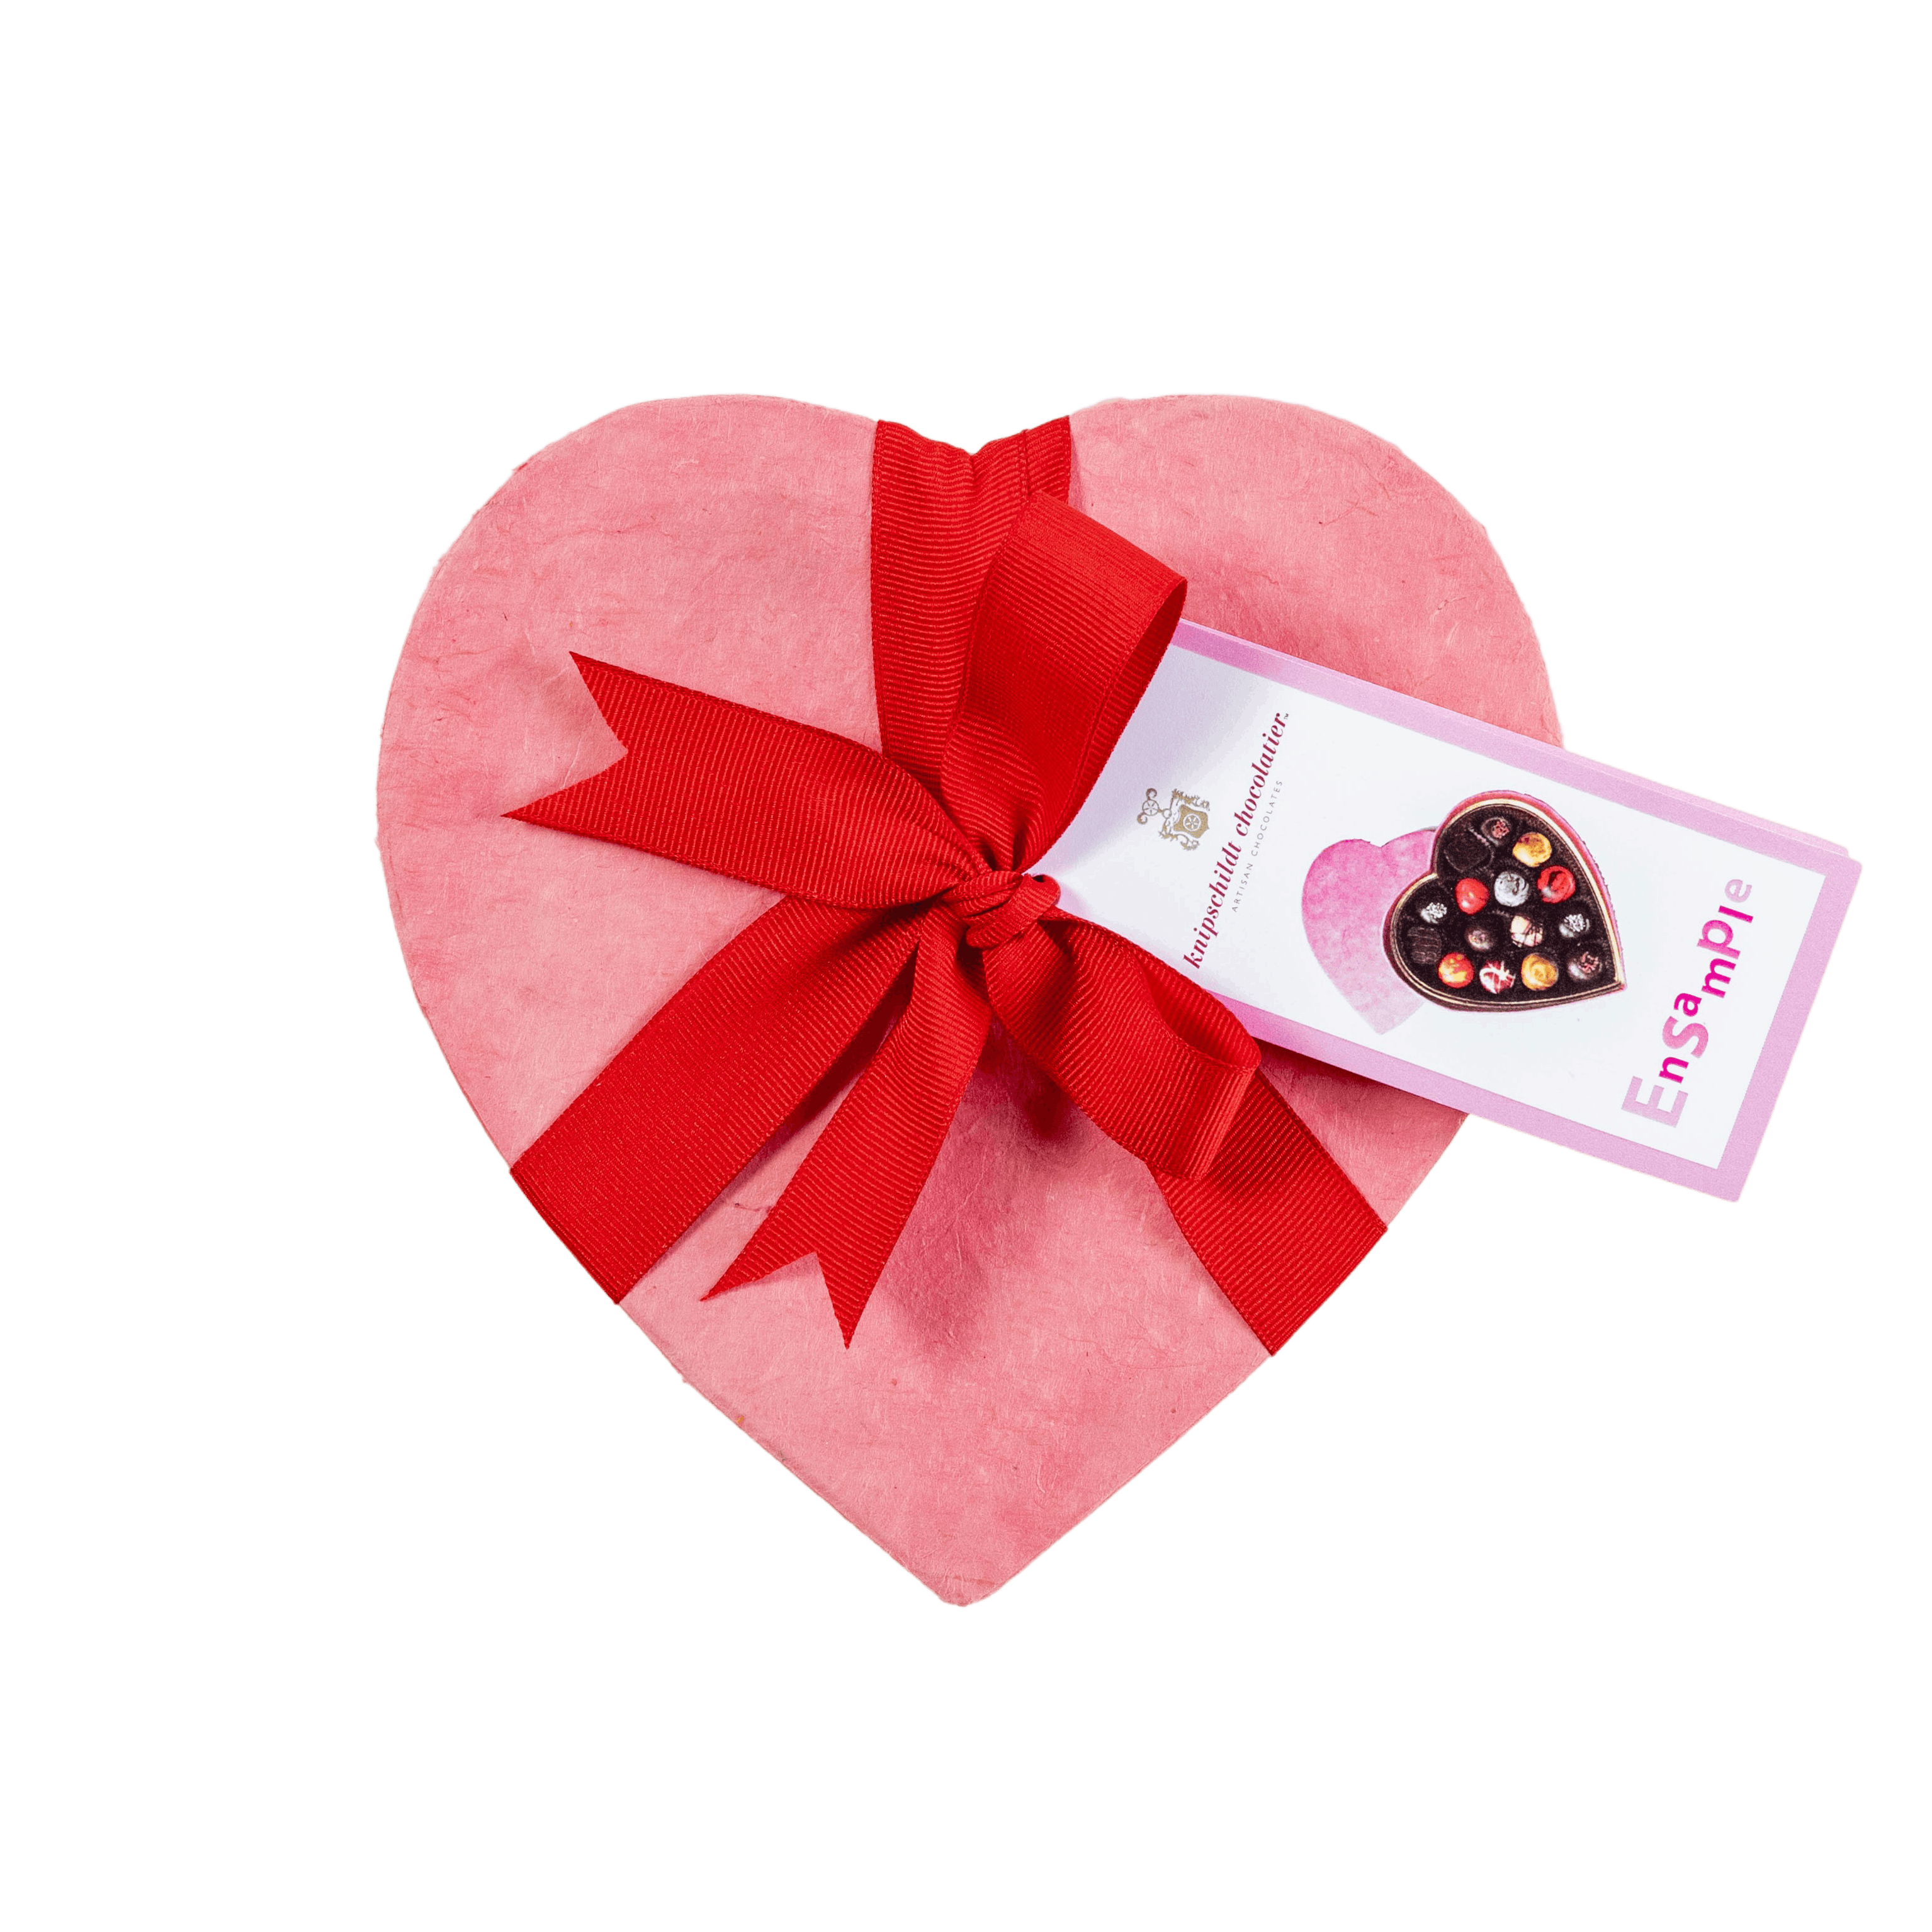 Heart Assorted Dark Chocolate Gift Box, 14 pc.